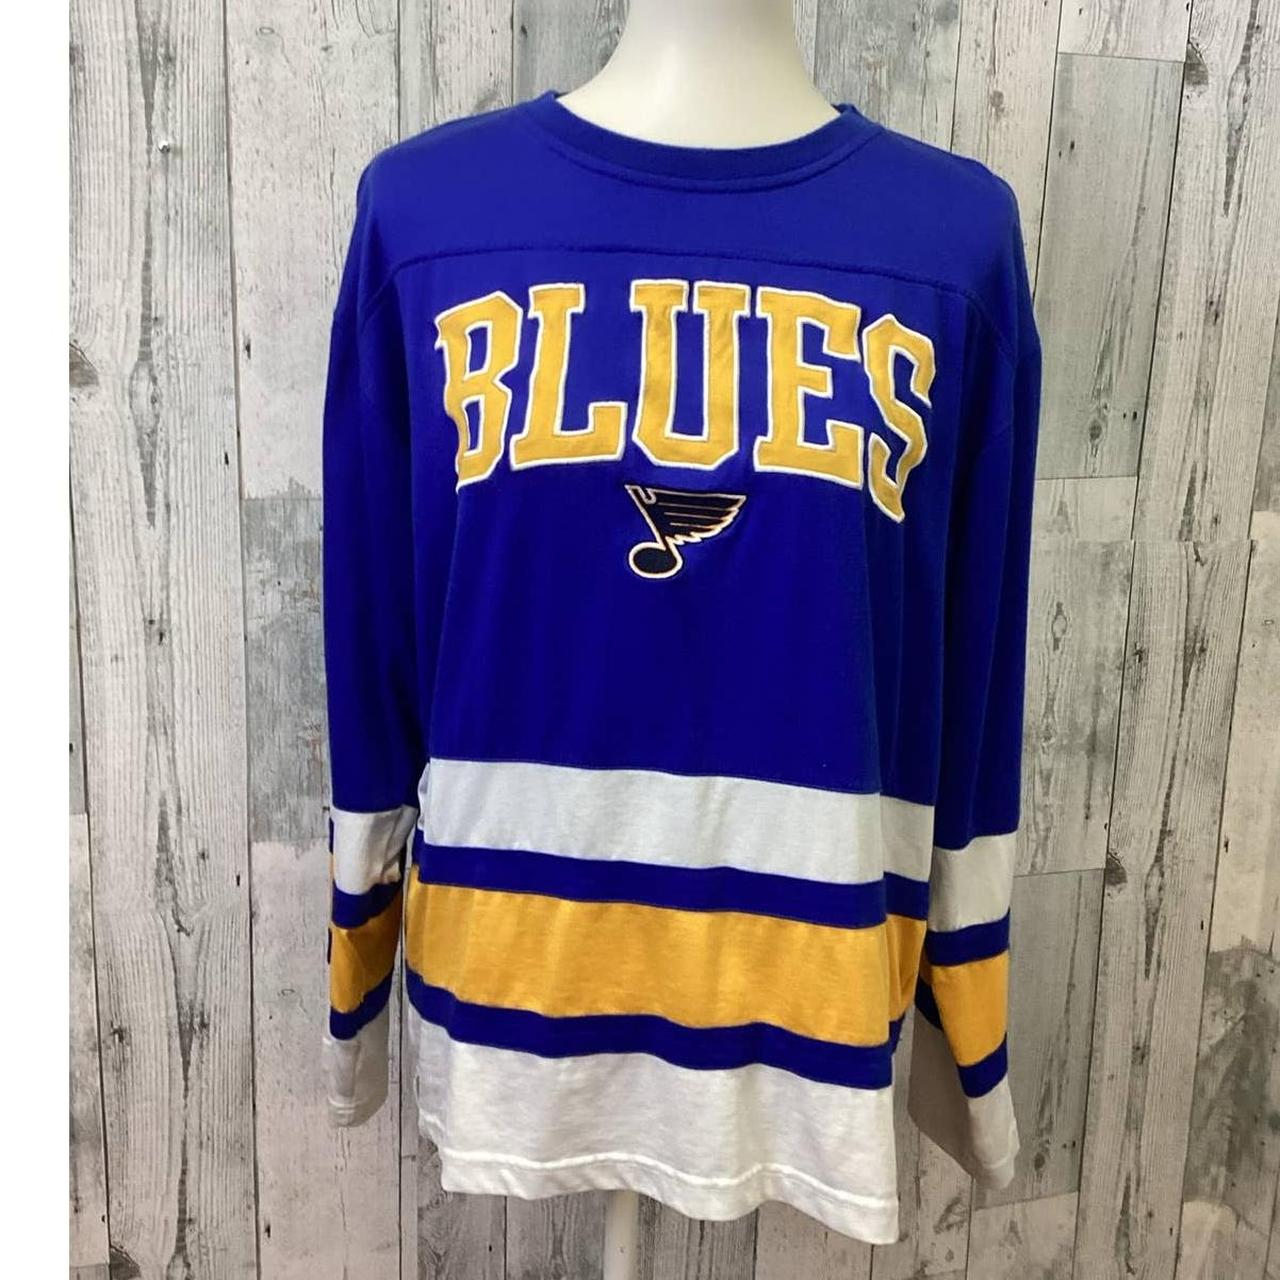 Mens vintage St. Louis Blues t shirt - Size L - - Depop